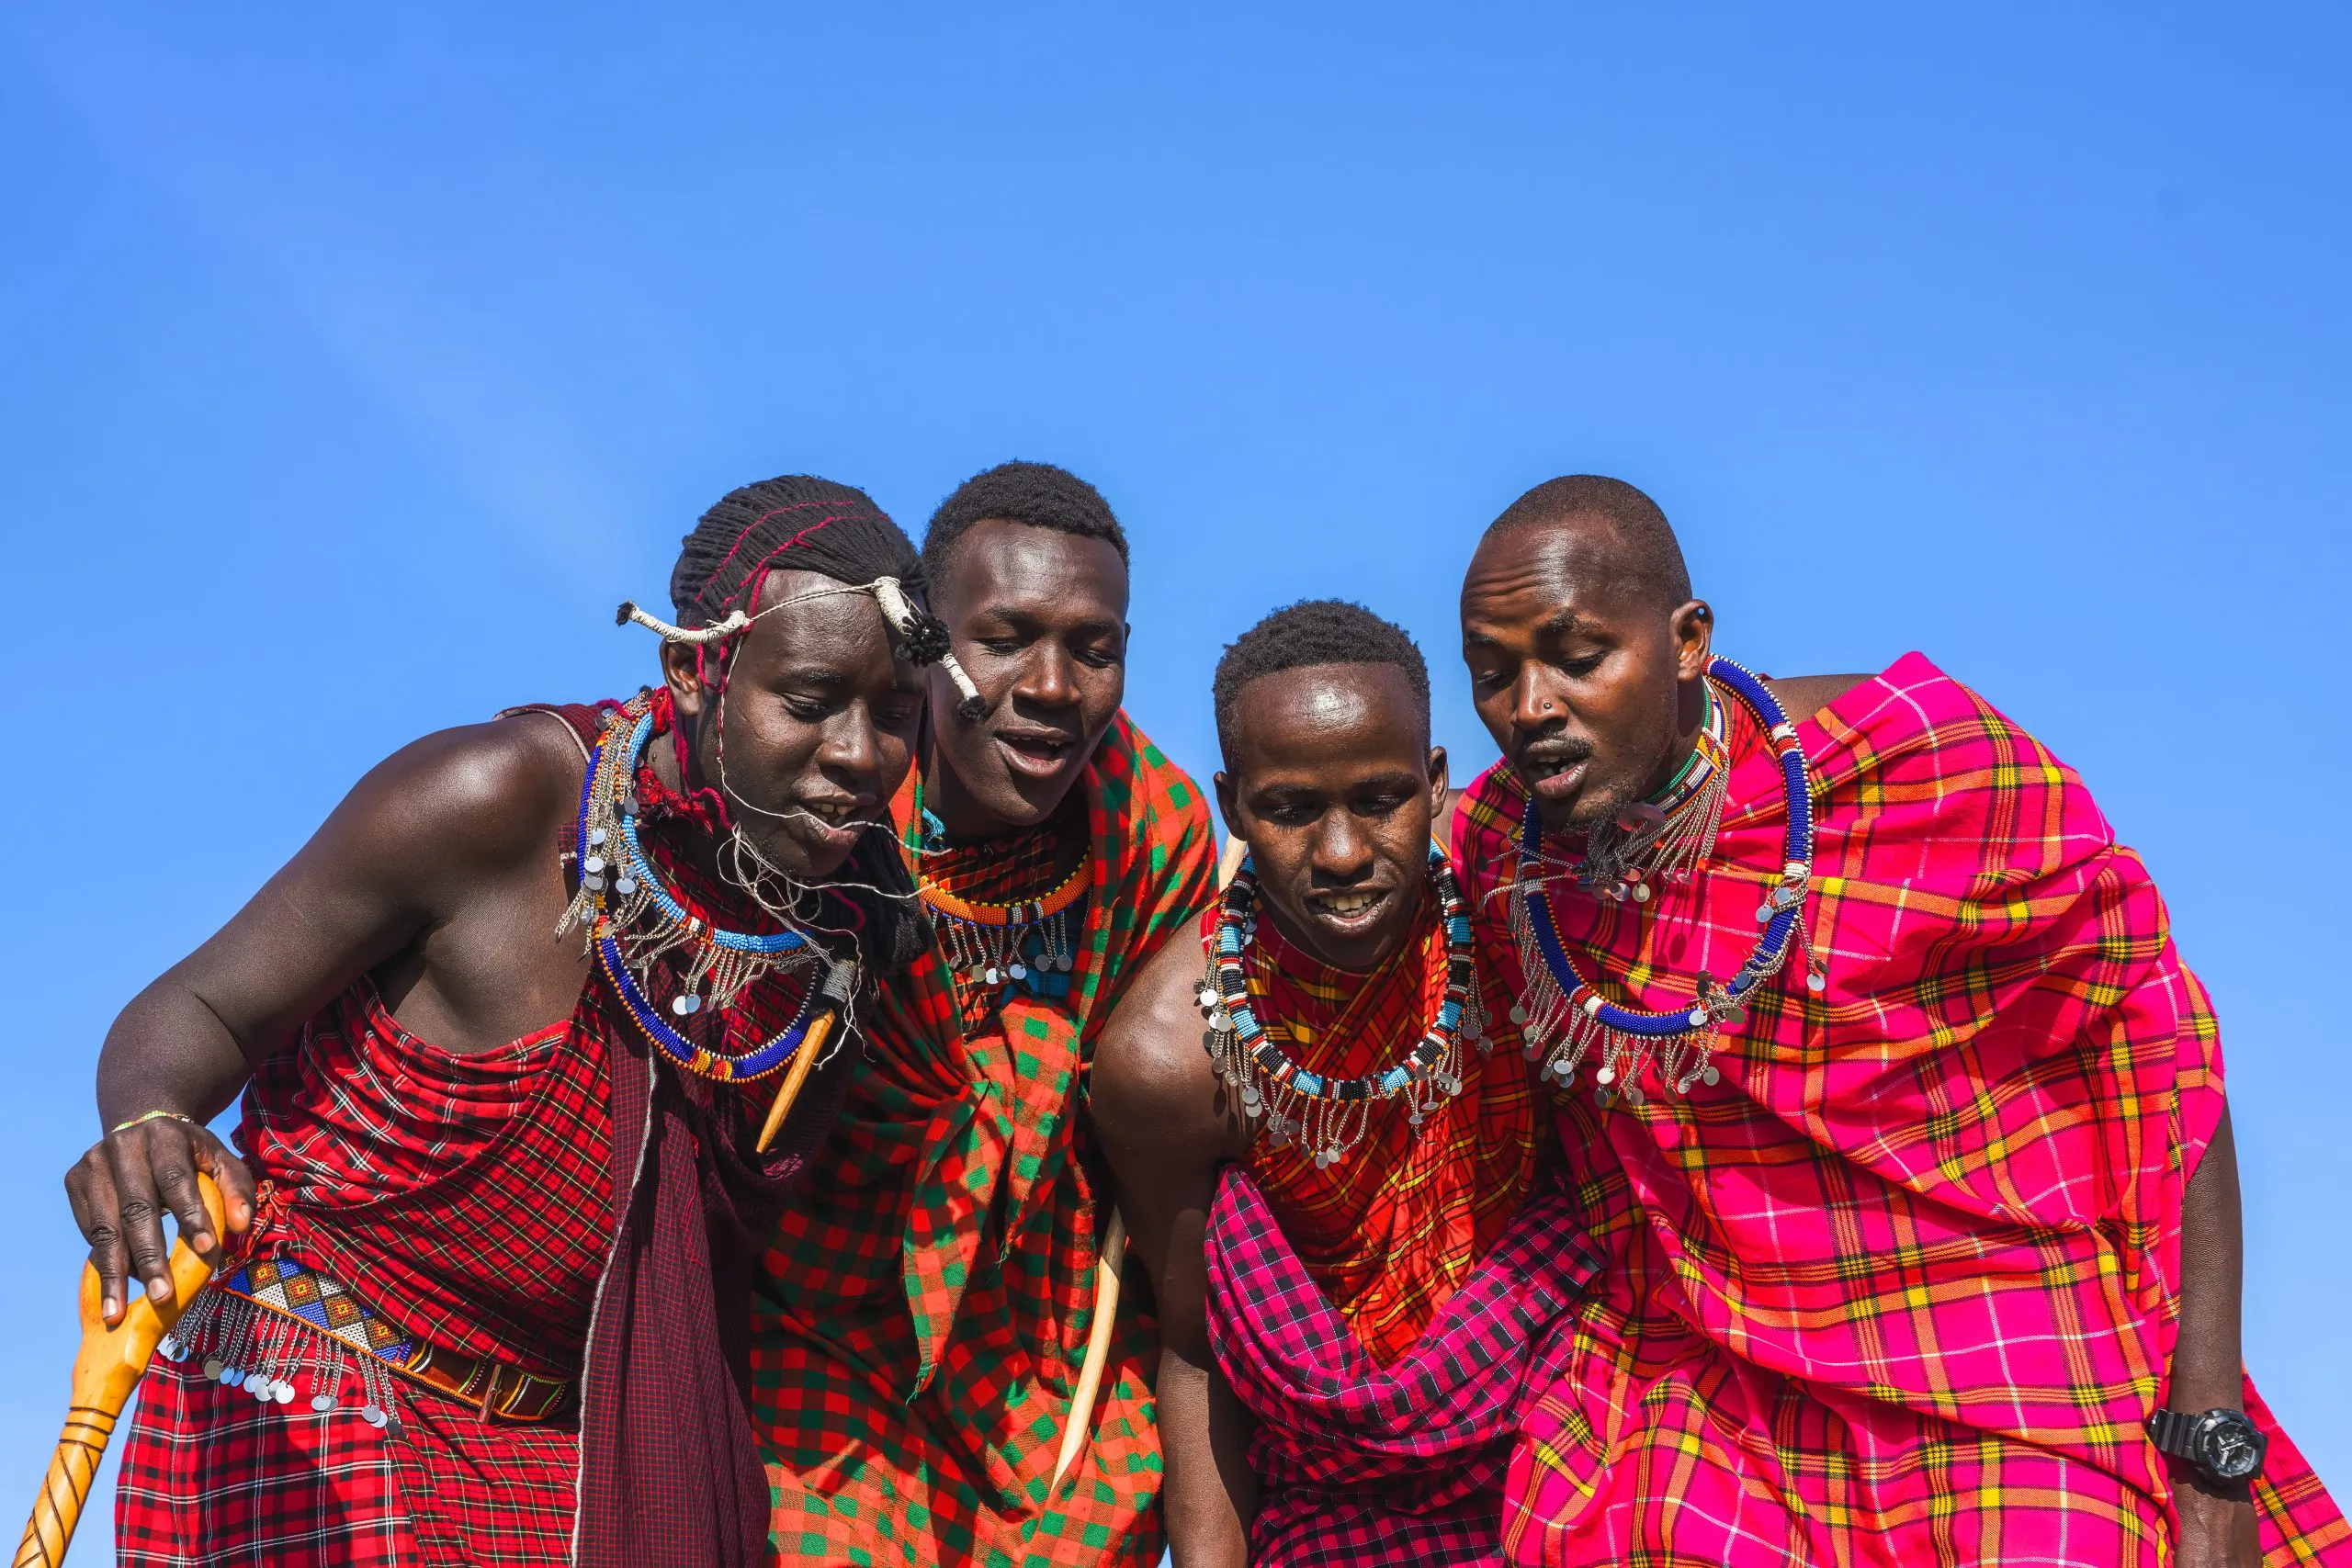 Maasai Maran mies esittelee perinteistä maasai-hyppytanssia.